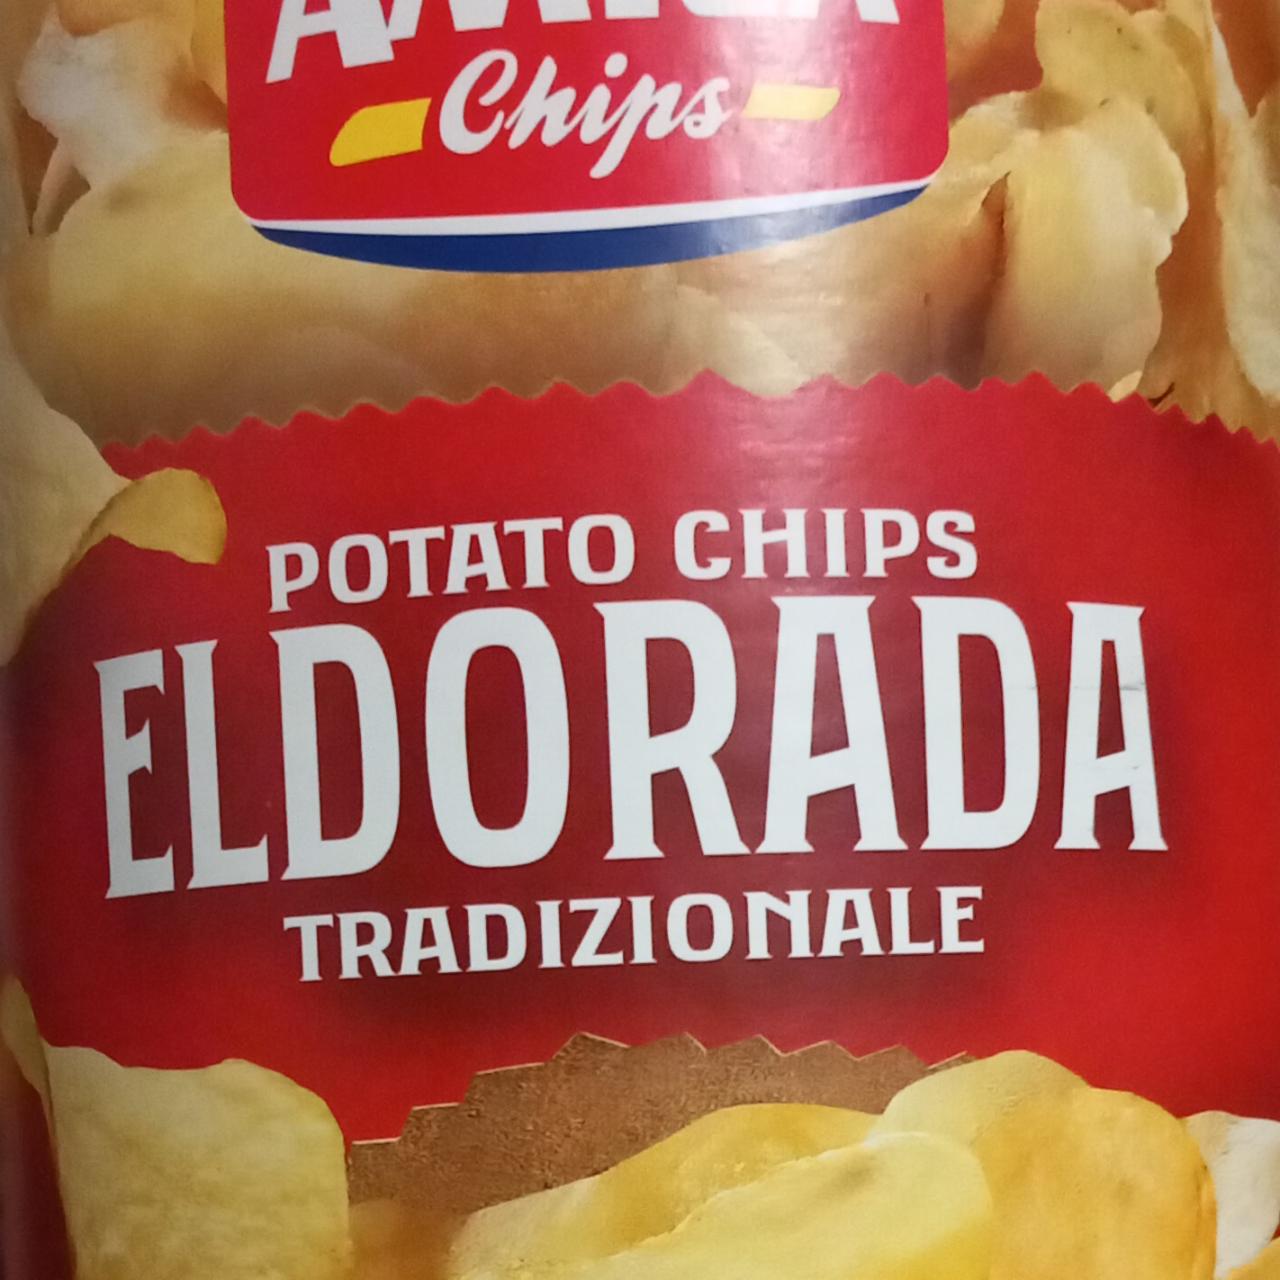 Zdjęcia - Potato chips Eldorada tradizionale Amica chips